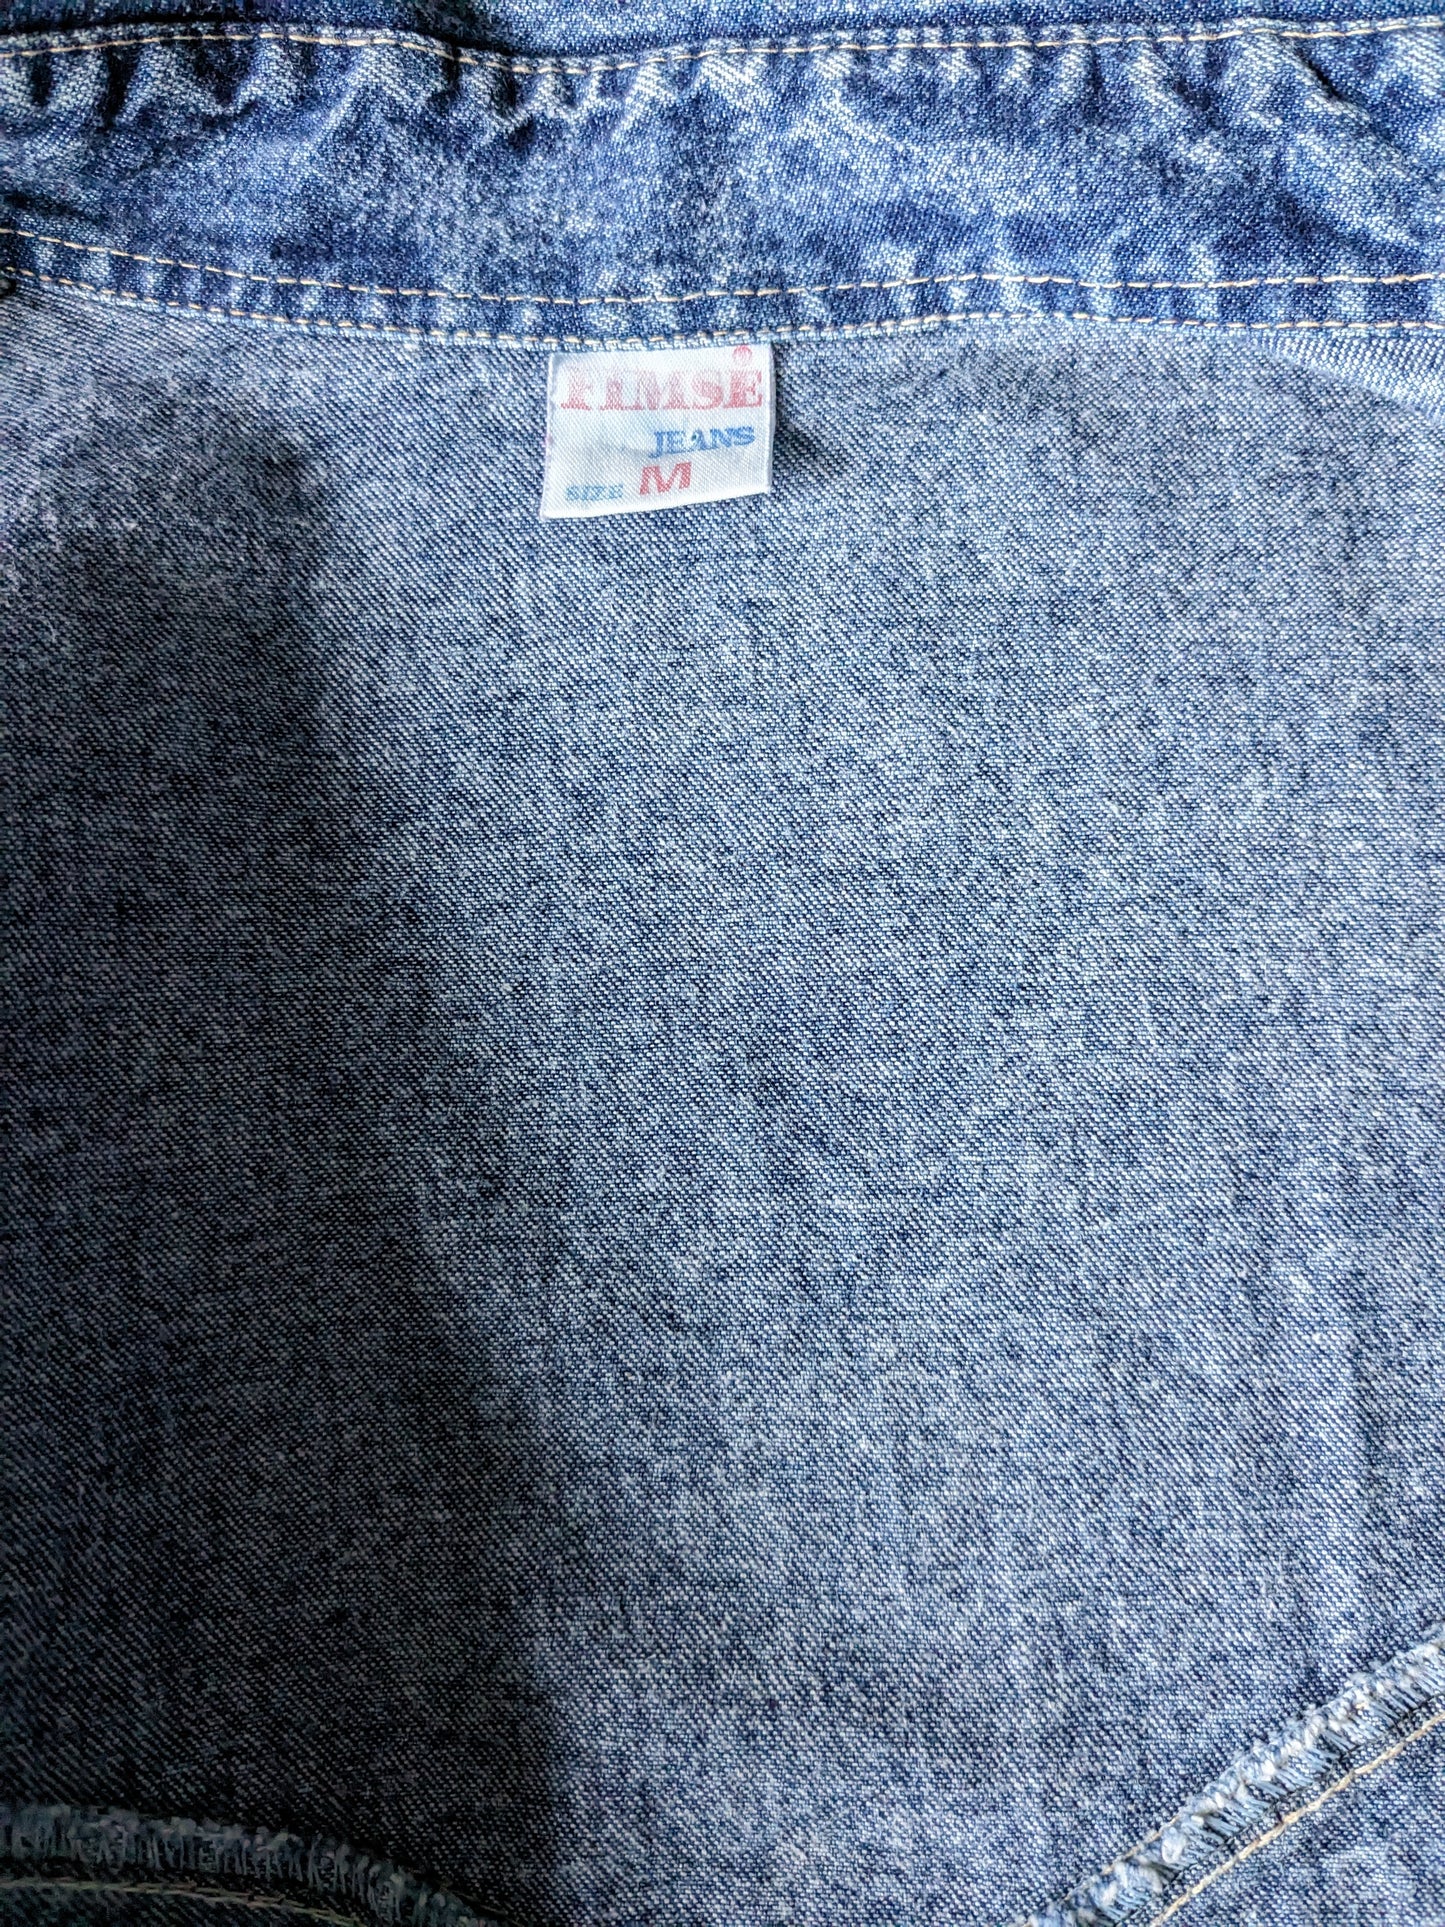 Camicia più spessa dei jeans da fimse vintage. Blu misto. Taglia L.